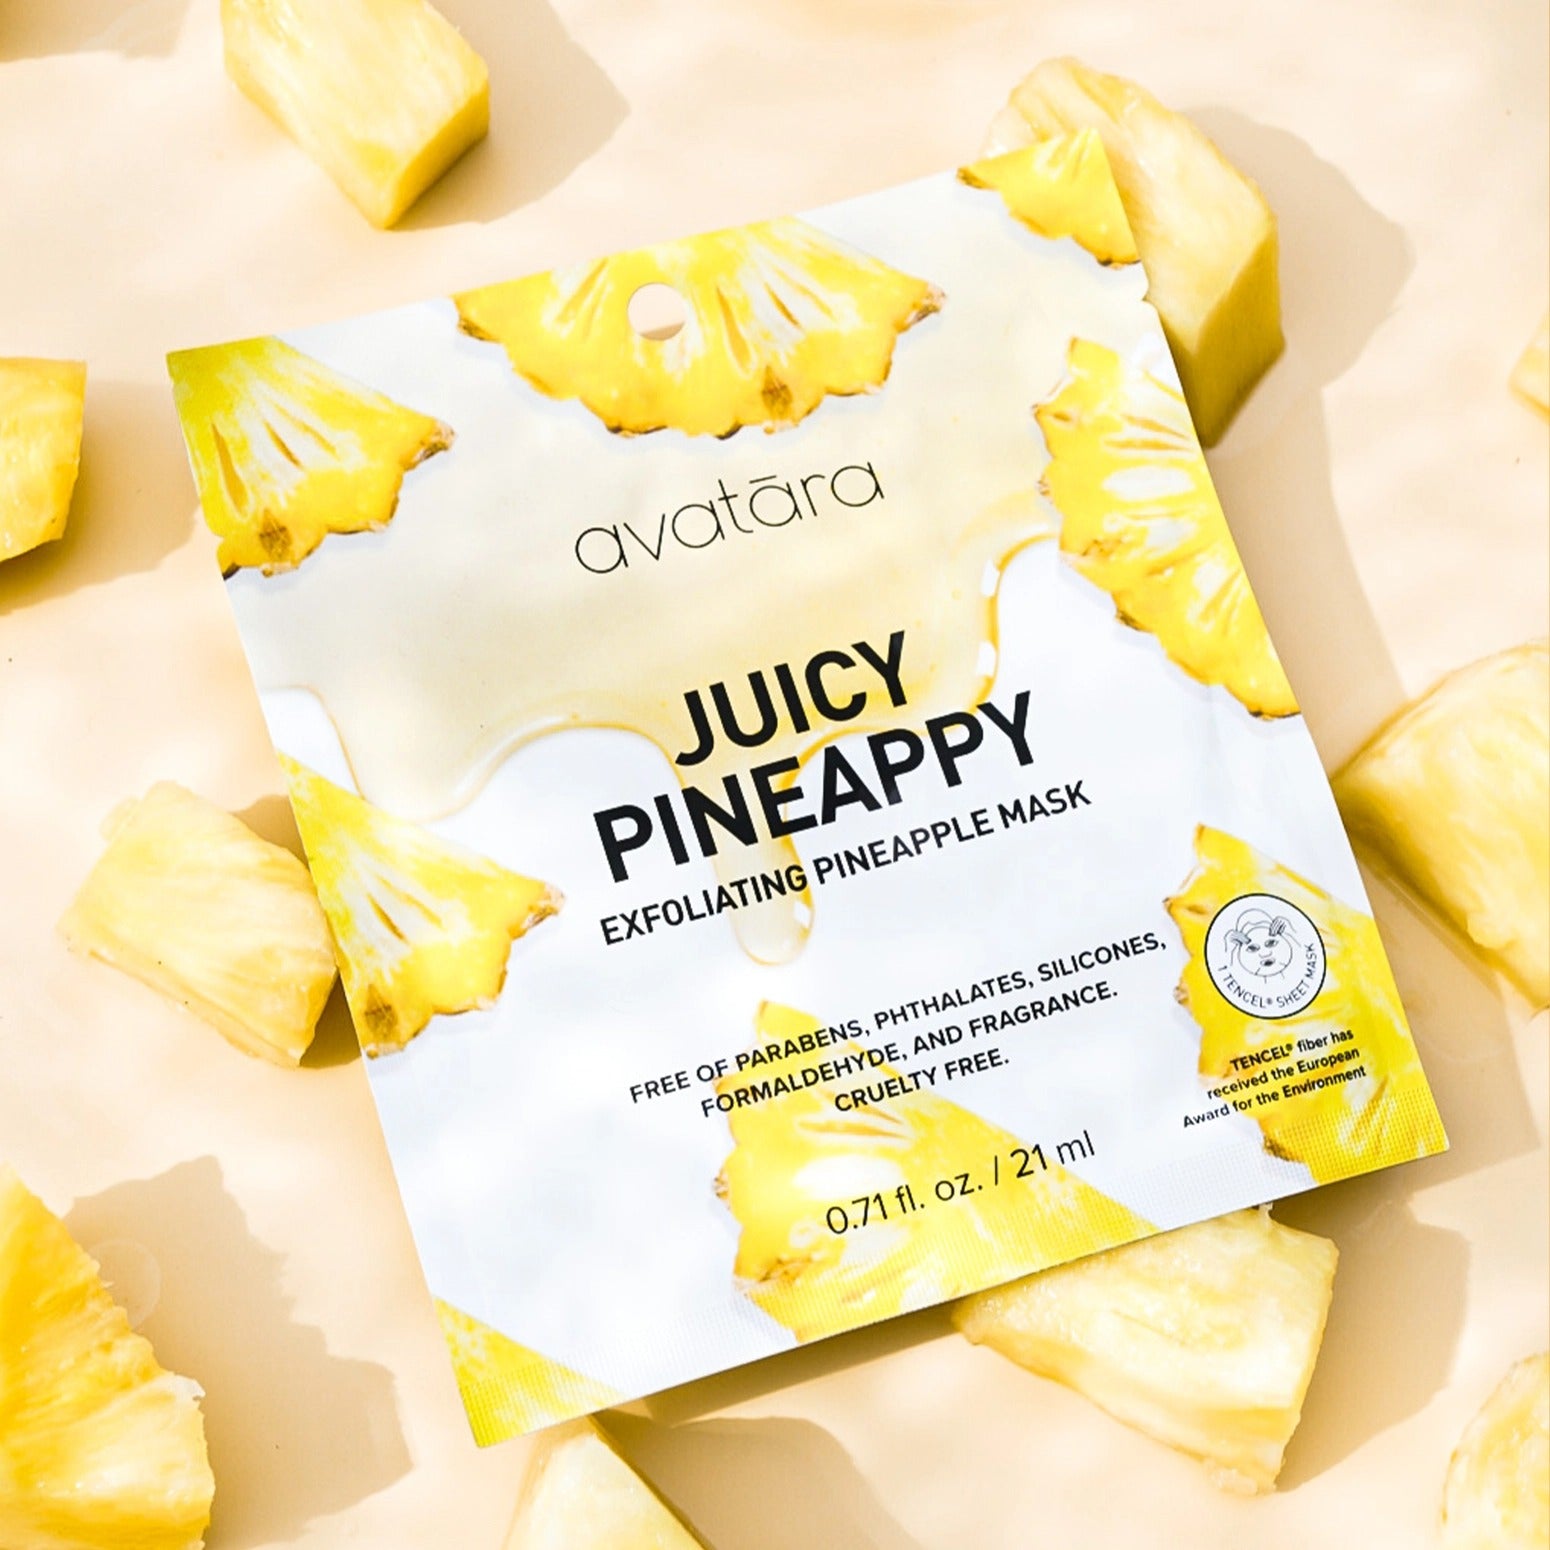 Masque exfoliant en tissu -À 'ananas Juicy Pineappy